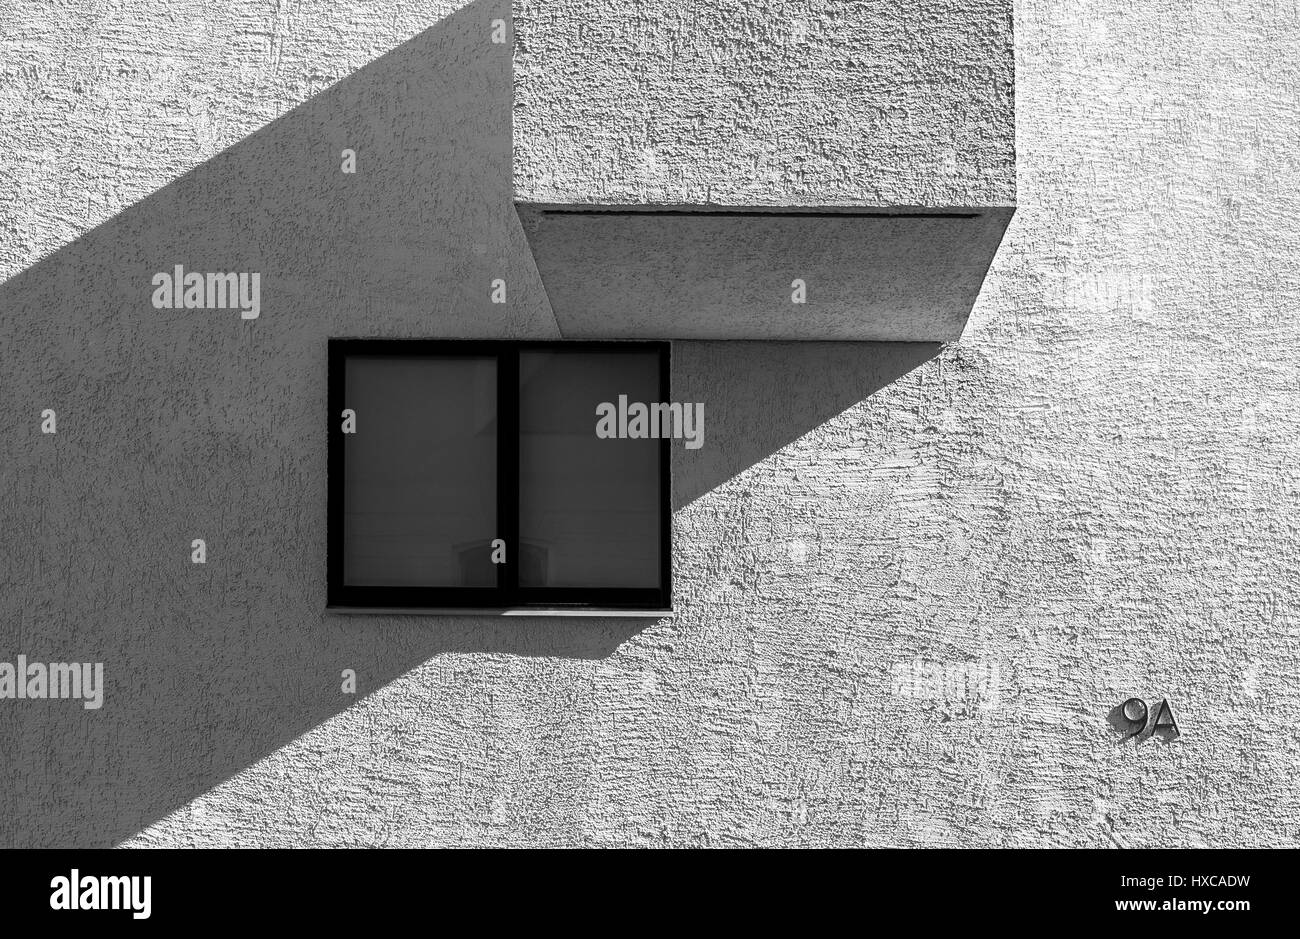 Alto contraste de imagen en blanco y negro del moderno edificio de aspecto abstracto con ventana y balcón detalle Foto de stock